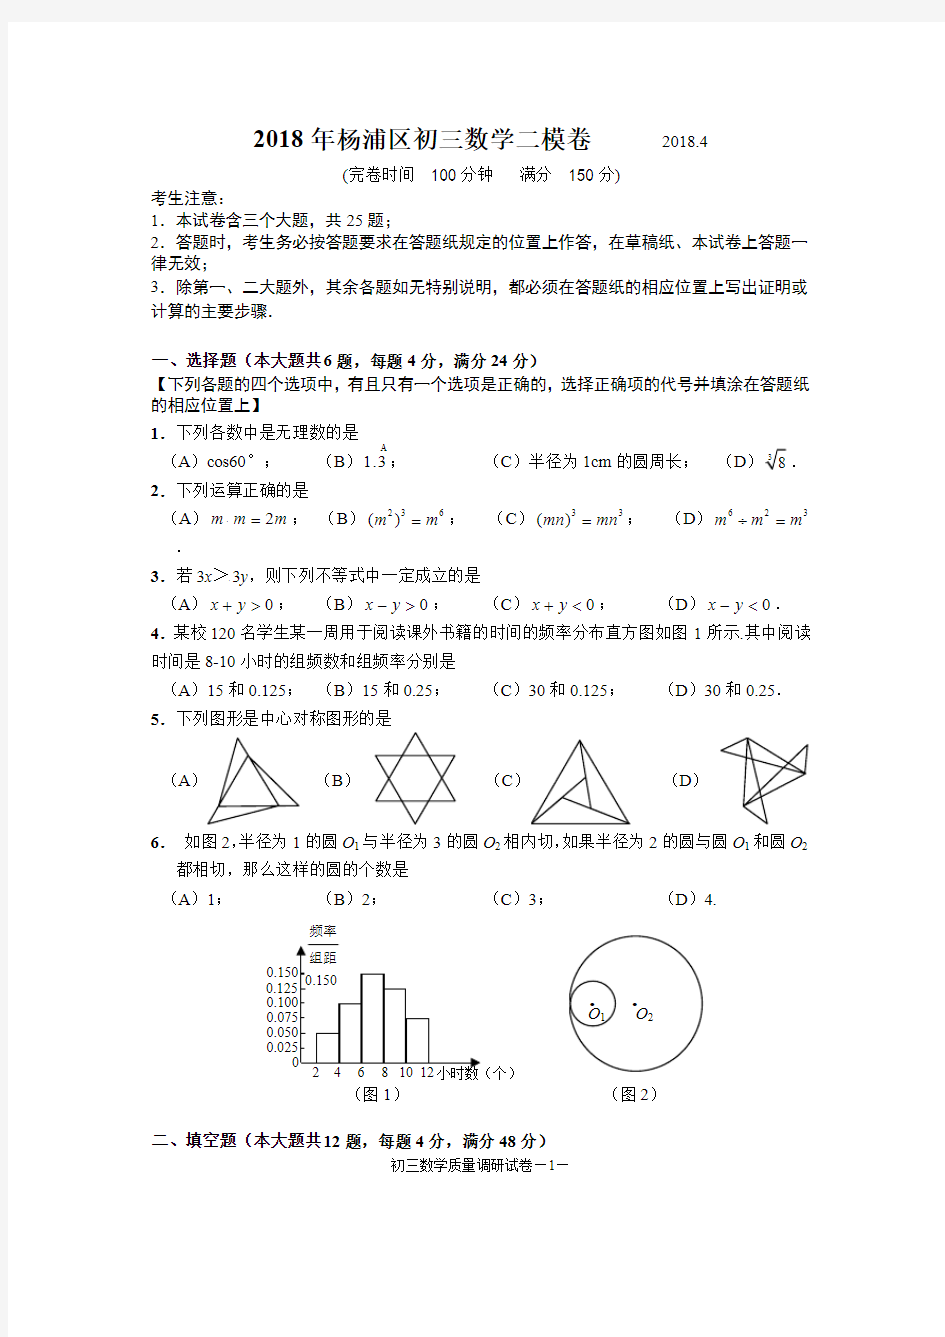 (完整版)2018年杨浦区初三数学二模卷及答案2018.4(最新整理)